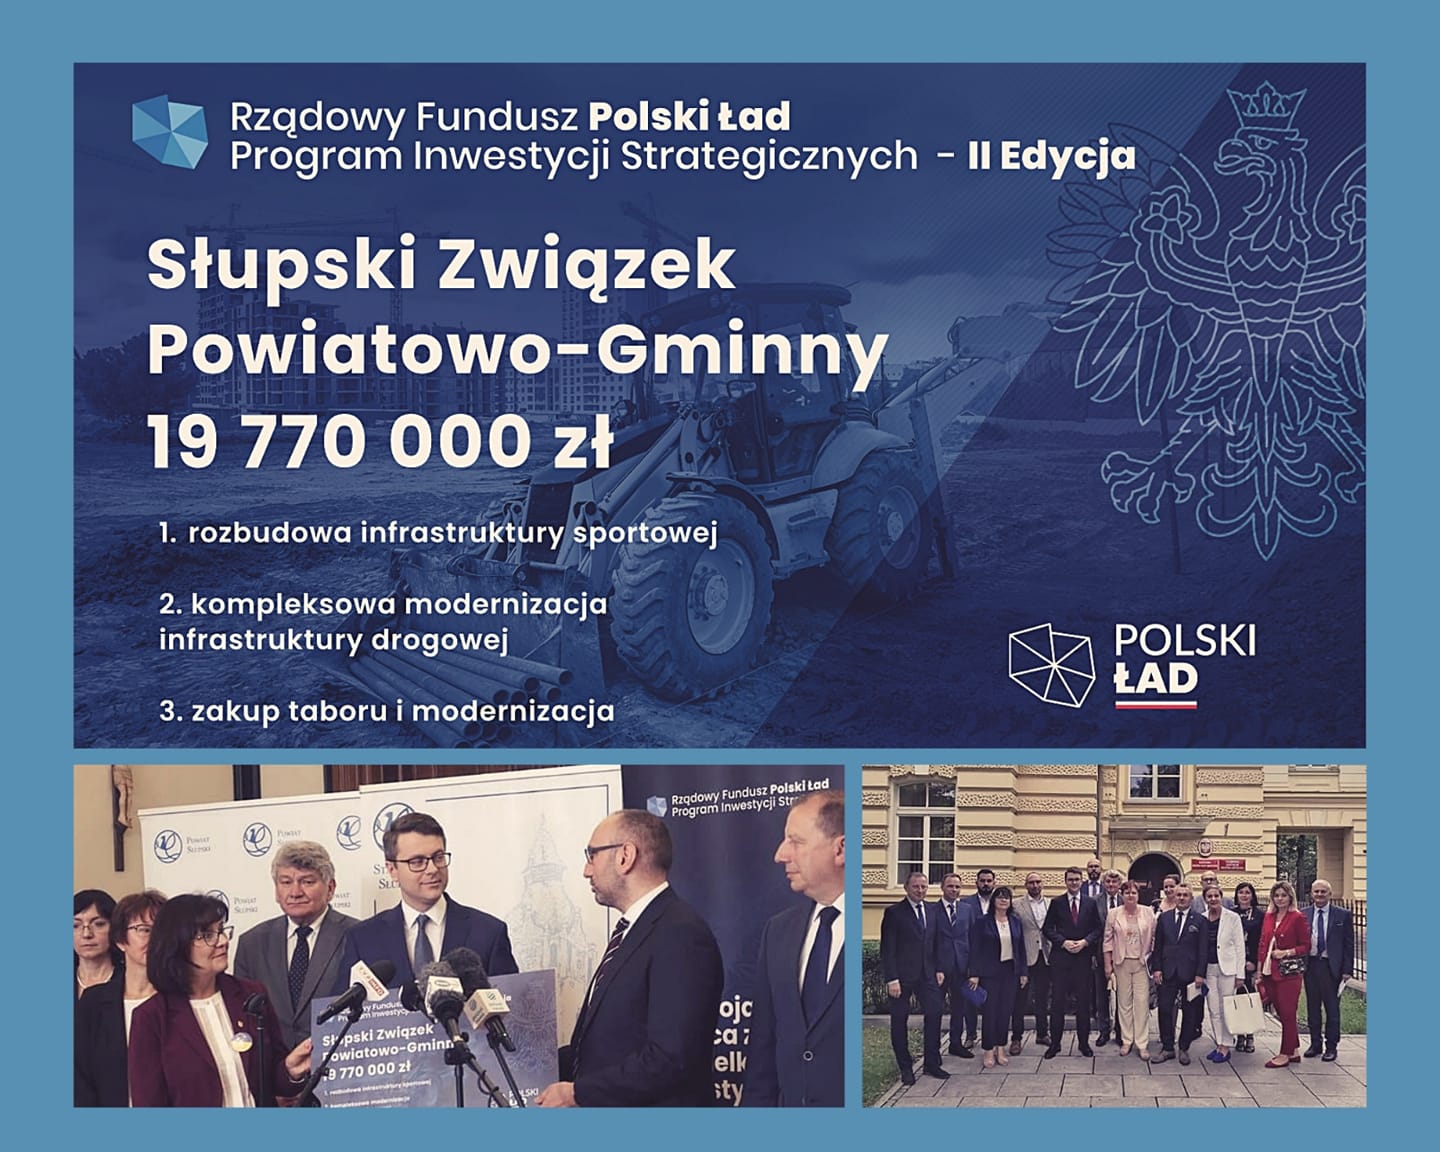 Słupski Związek Powiatowo-Gminny uzyskał aż 19 770 000 zł dofinansowania z Rządowego Programu Inwestycji Strategicznych. Wzajemna współpraca samorządowców jest niezwykle ważna dla całego regionu słupskiego i jego mieszkańców.